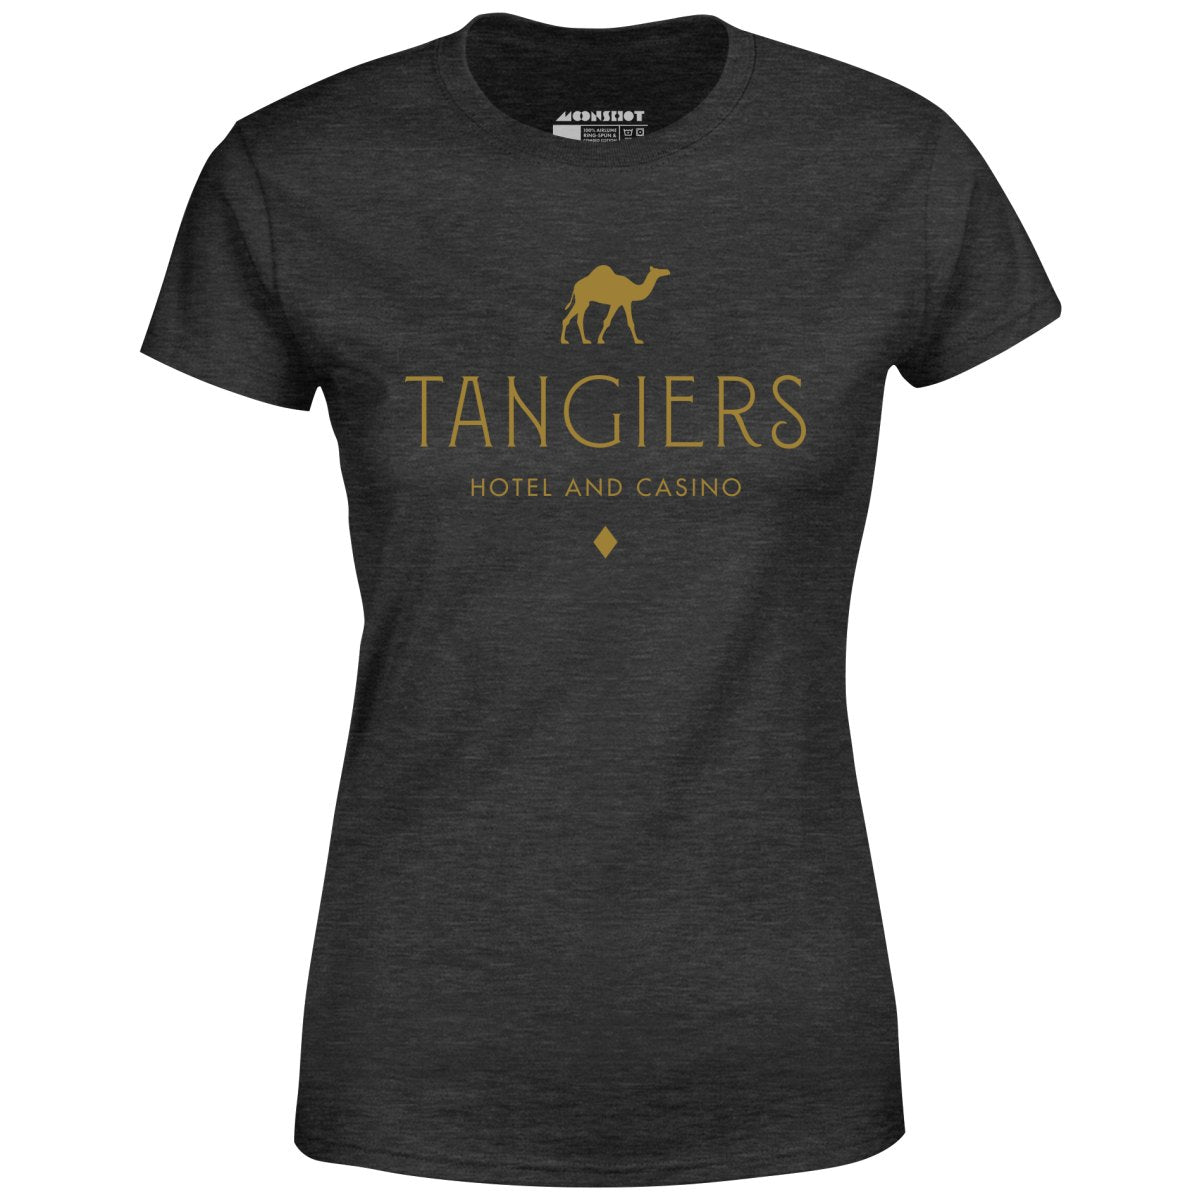 Tangiers Hotel & Casino - Women's T-Shirt